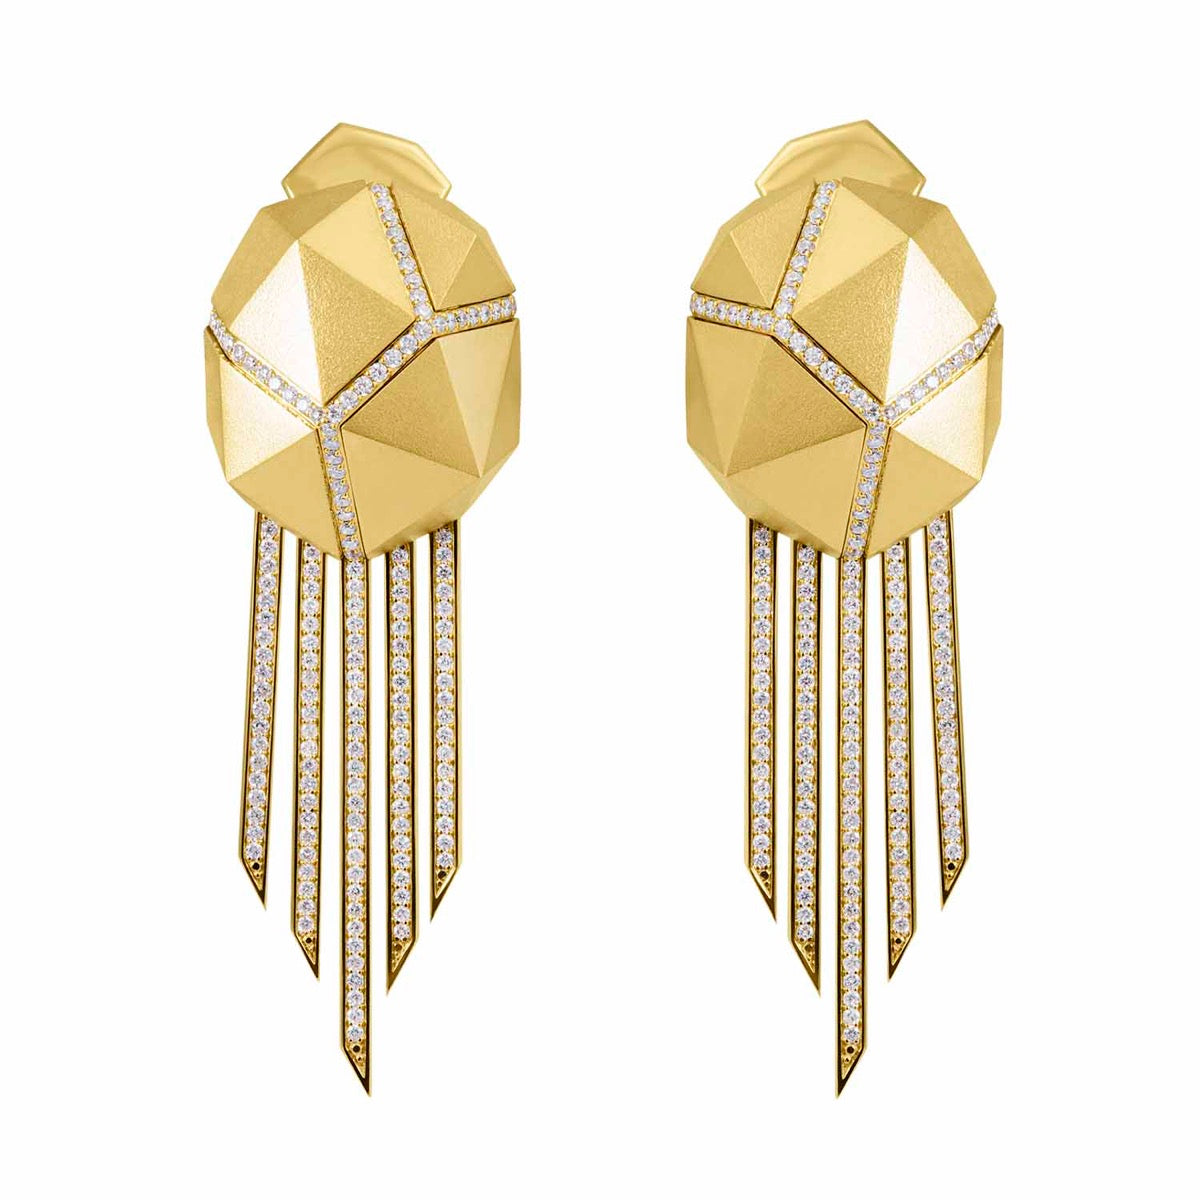 E 0191-2, 18K Yellow Gold, Diamonds Earrings